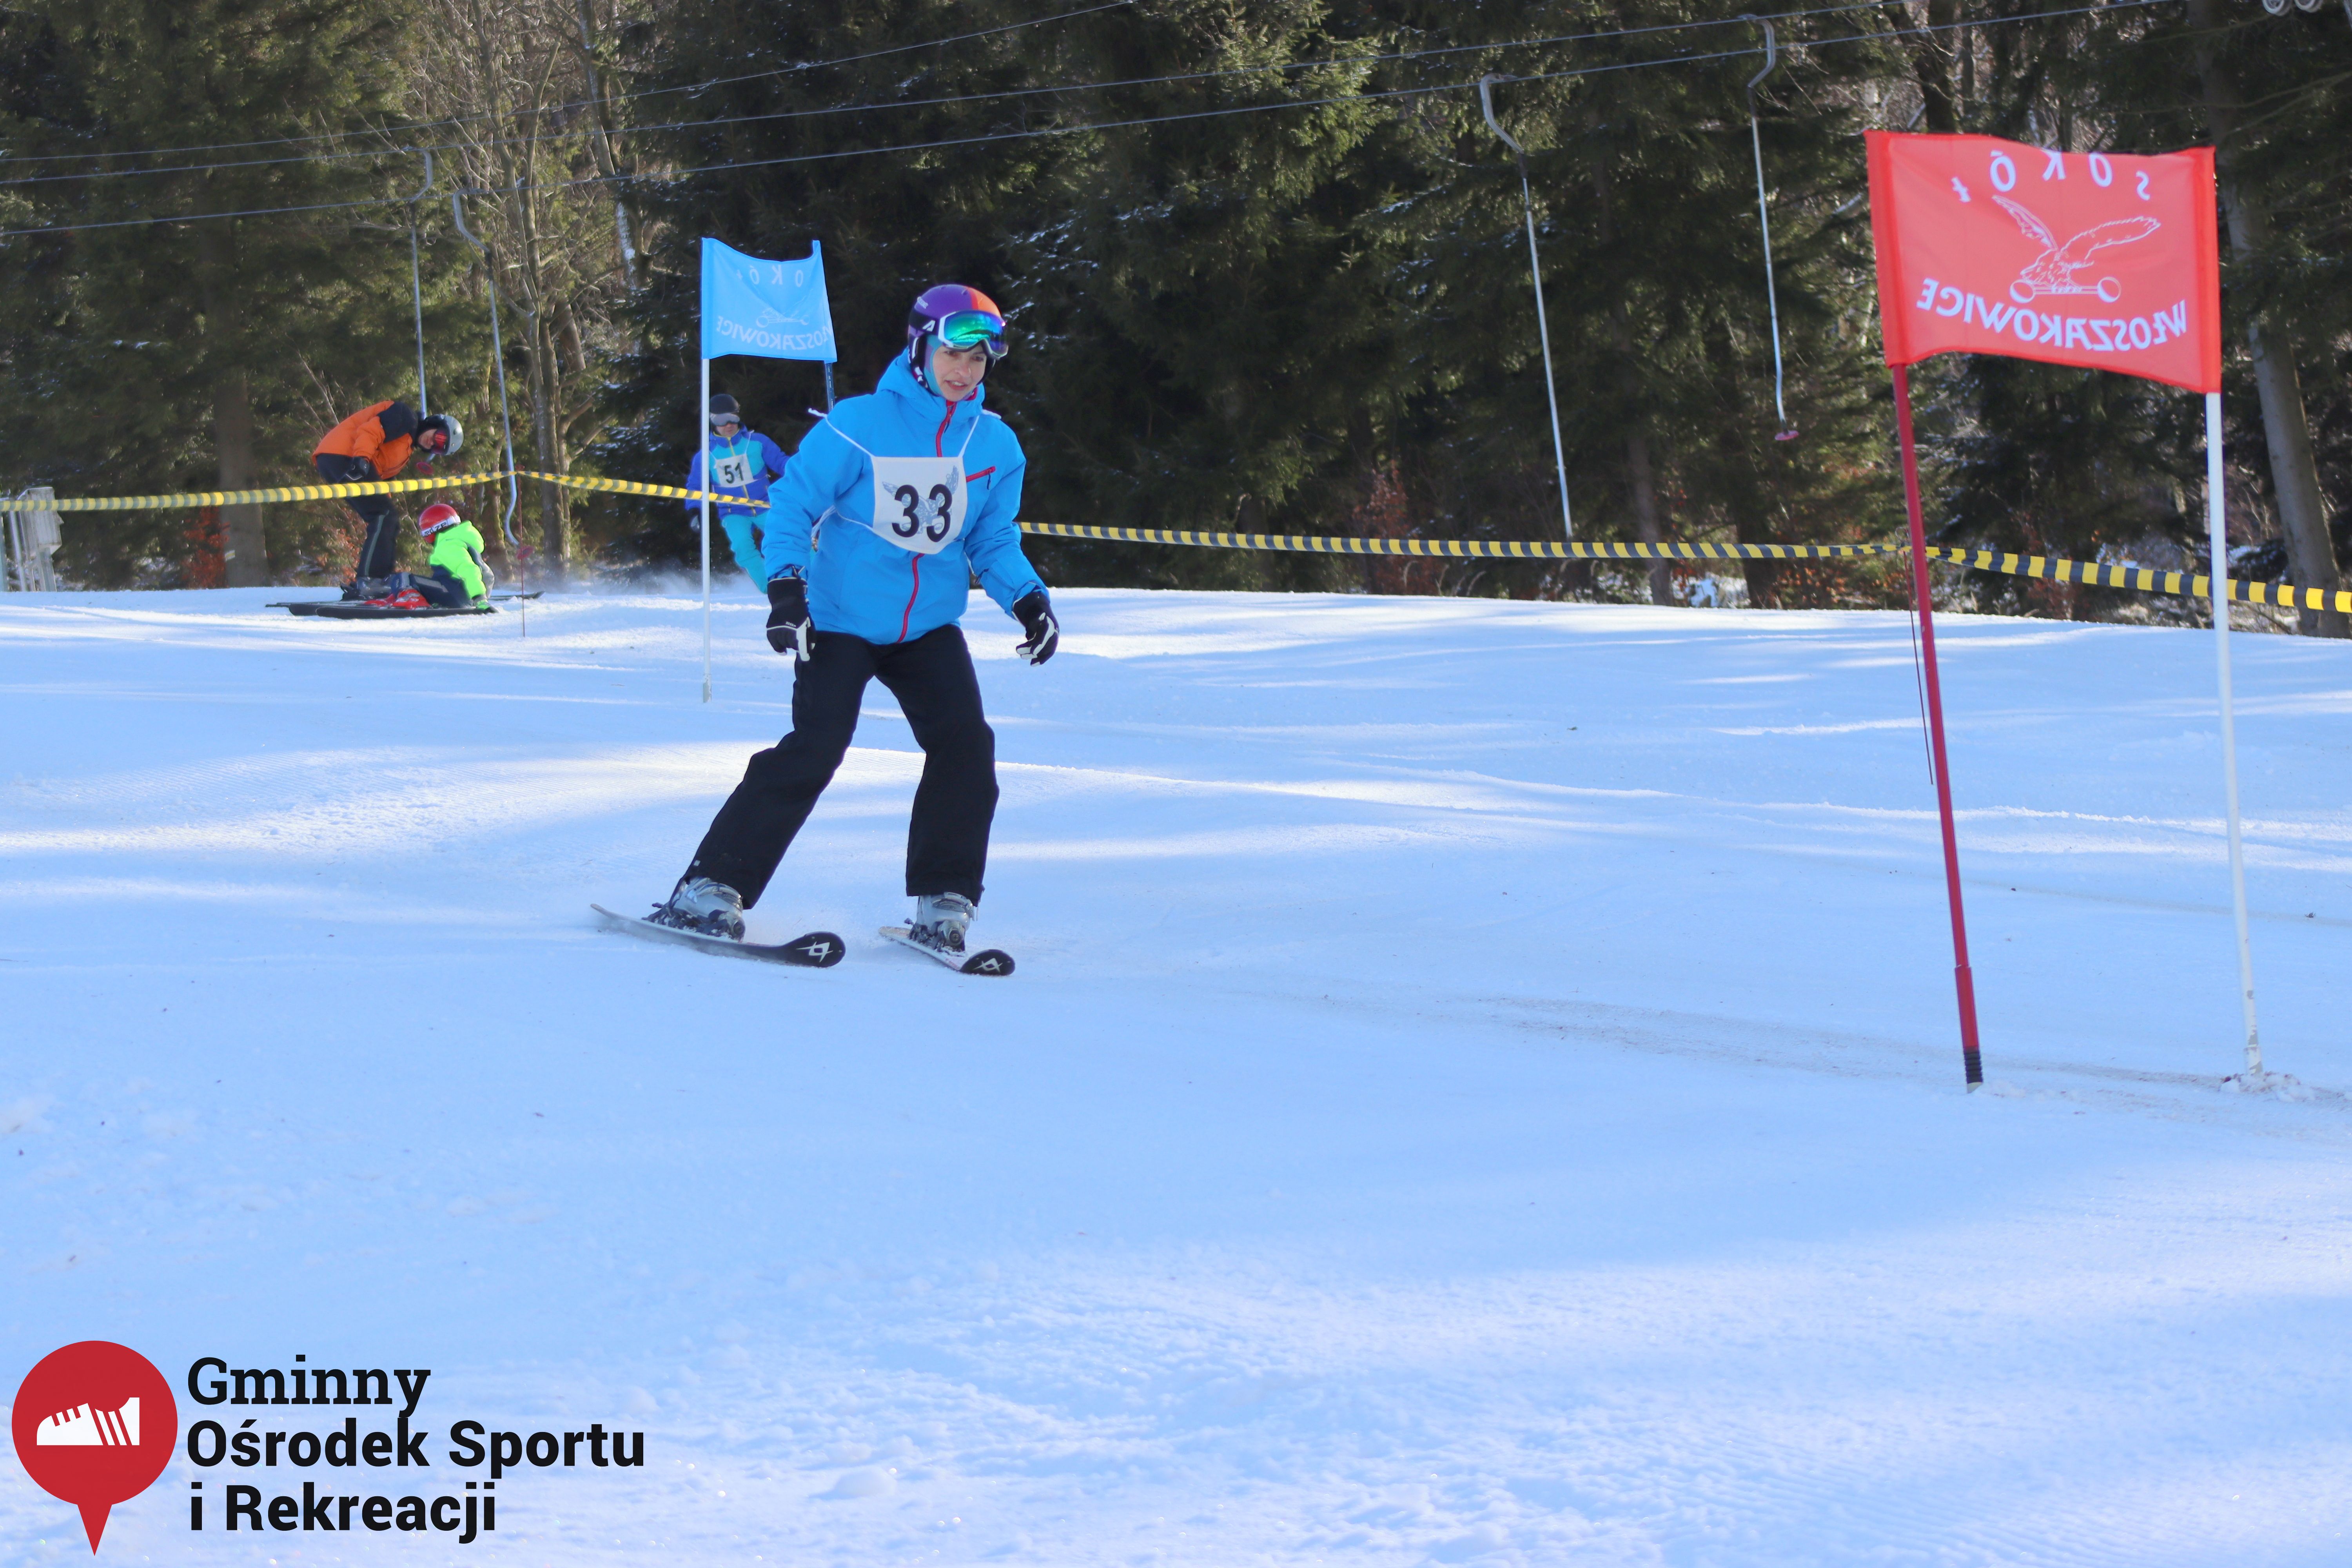 2022.02.12 - 18. Mistrzostwa Gminy Woszakowice w narciarstwie037.jpg - 1,75 MB